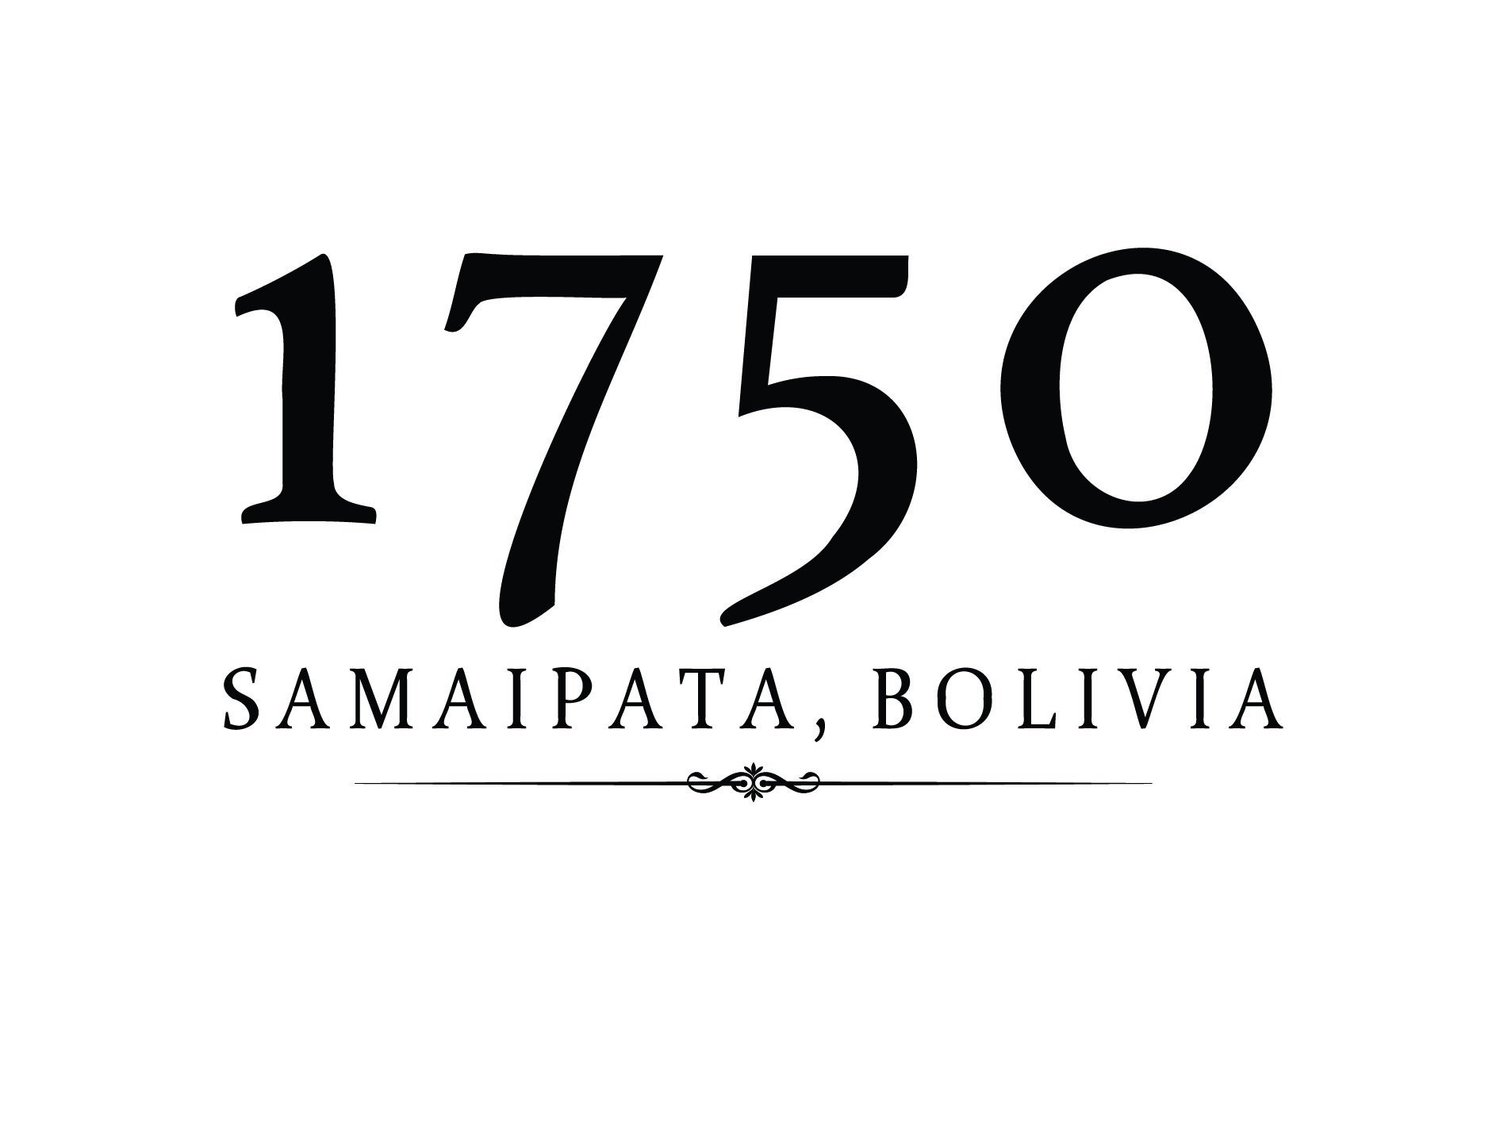 1750